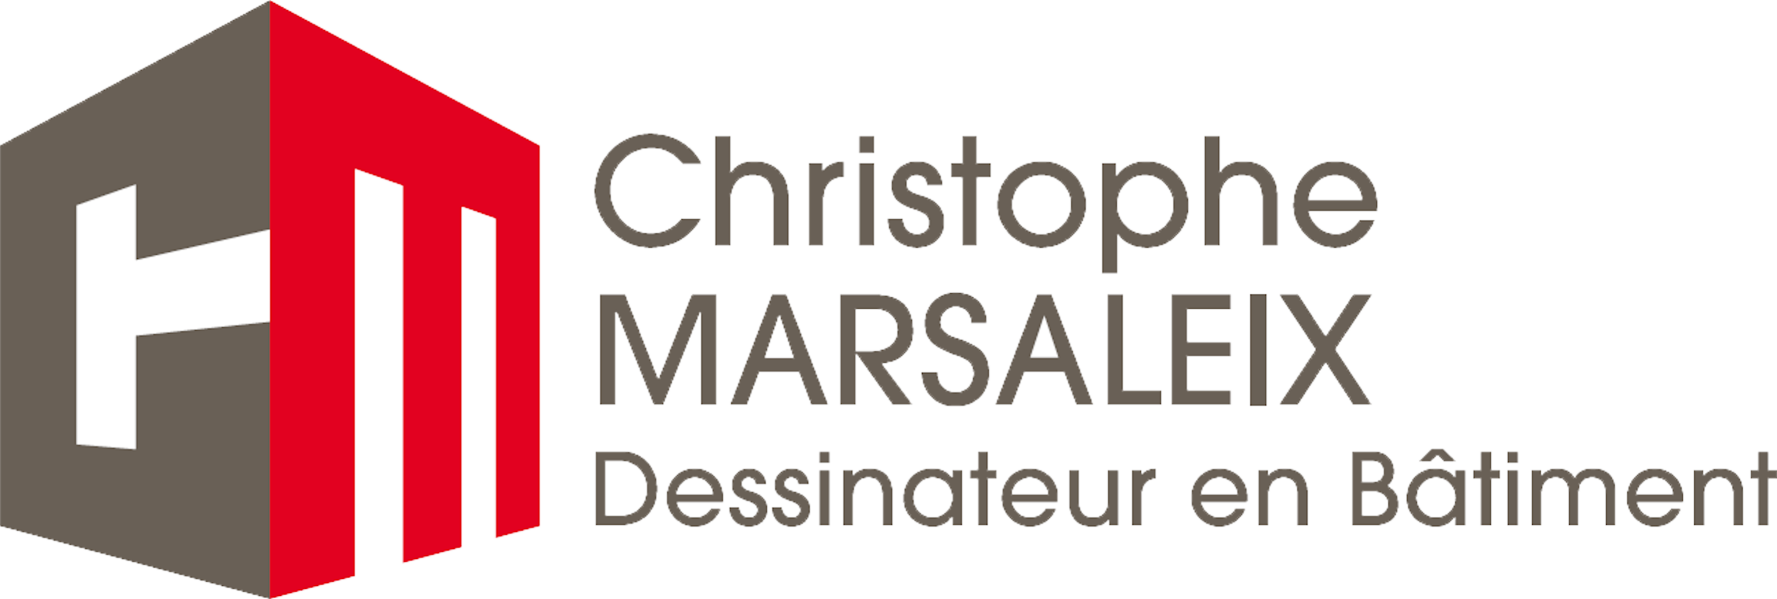 Chrisophe Marsaleix - Tarifs et mode de fonctionnement